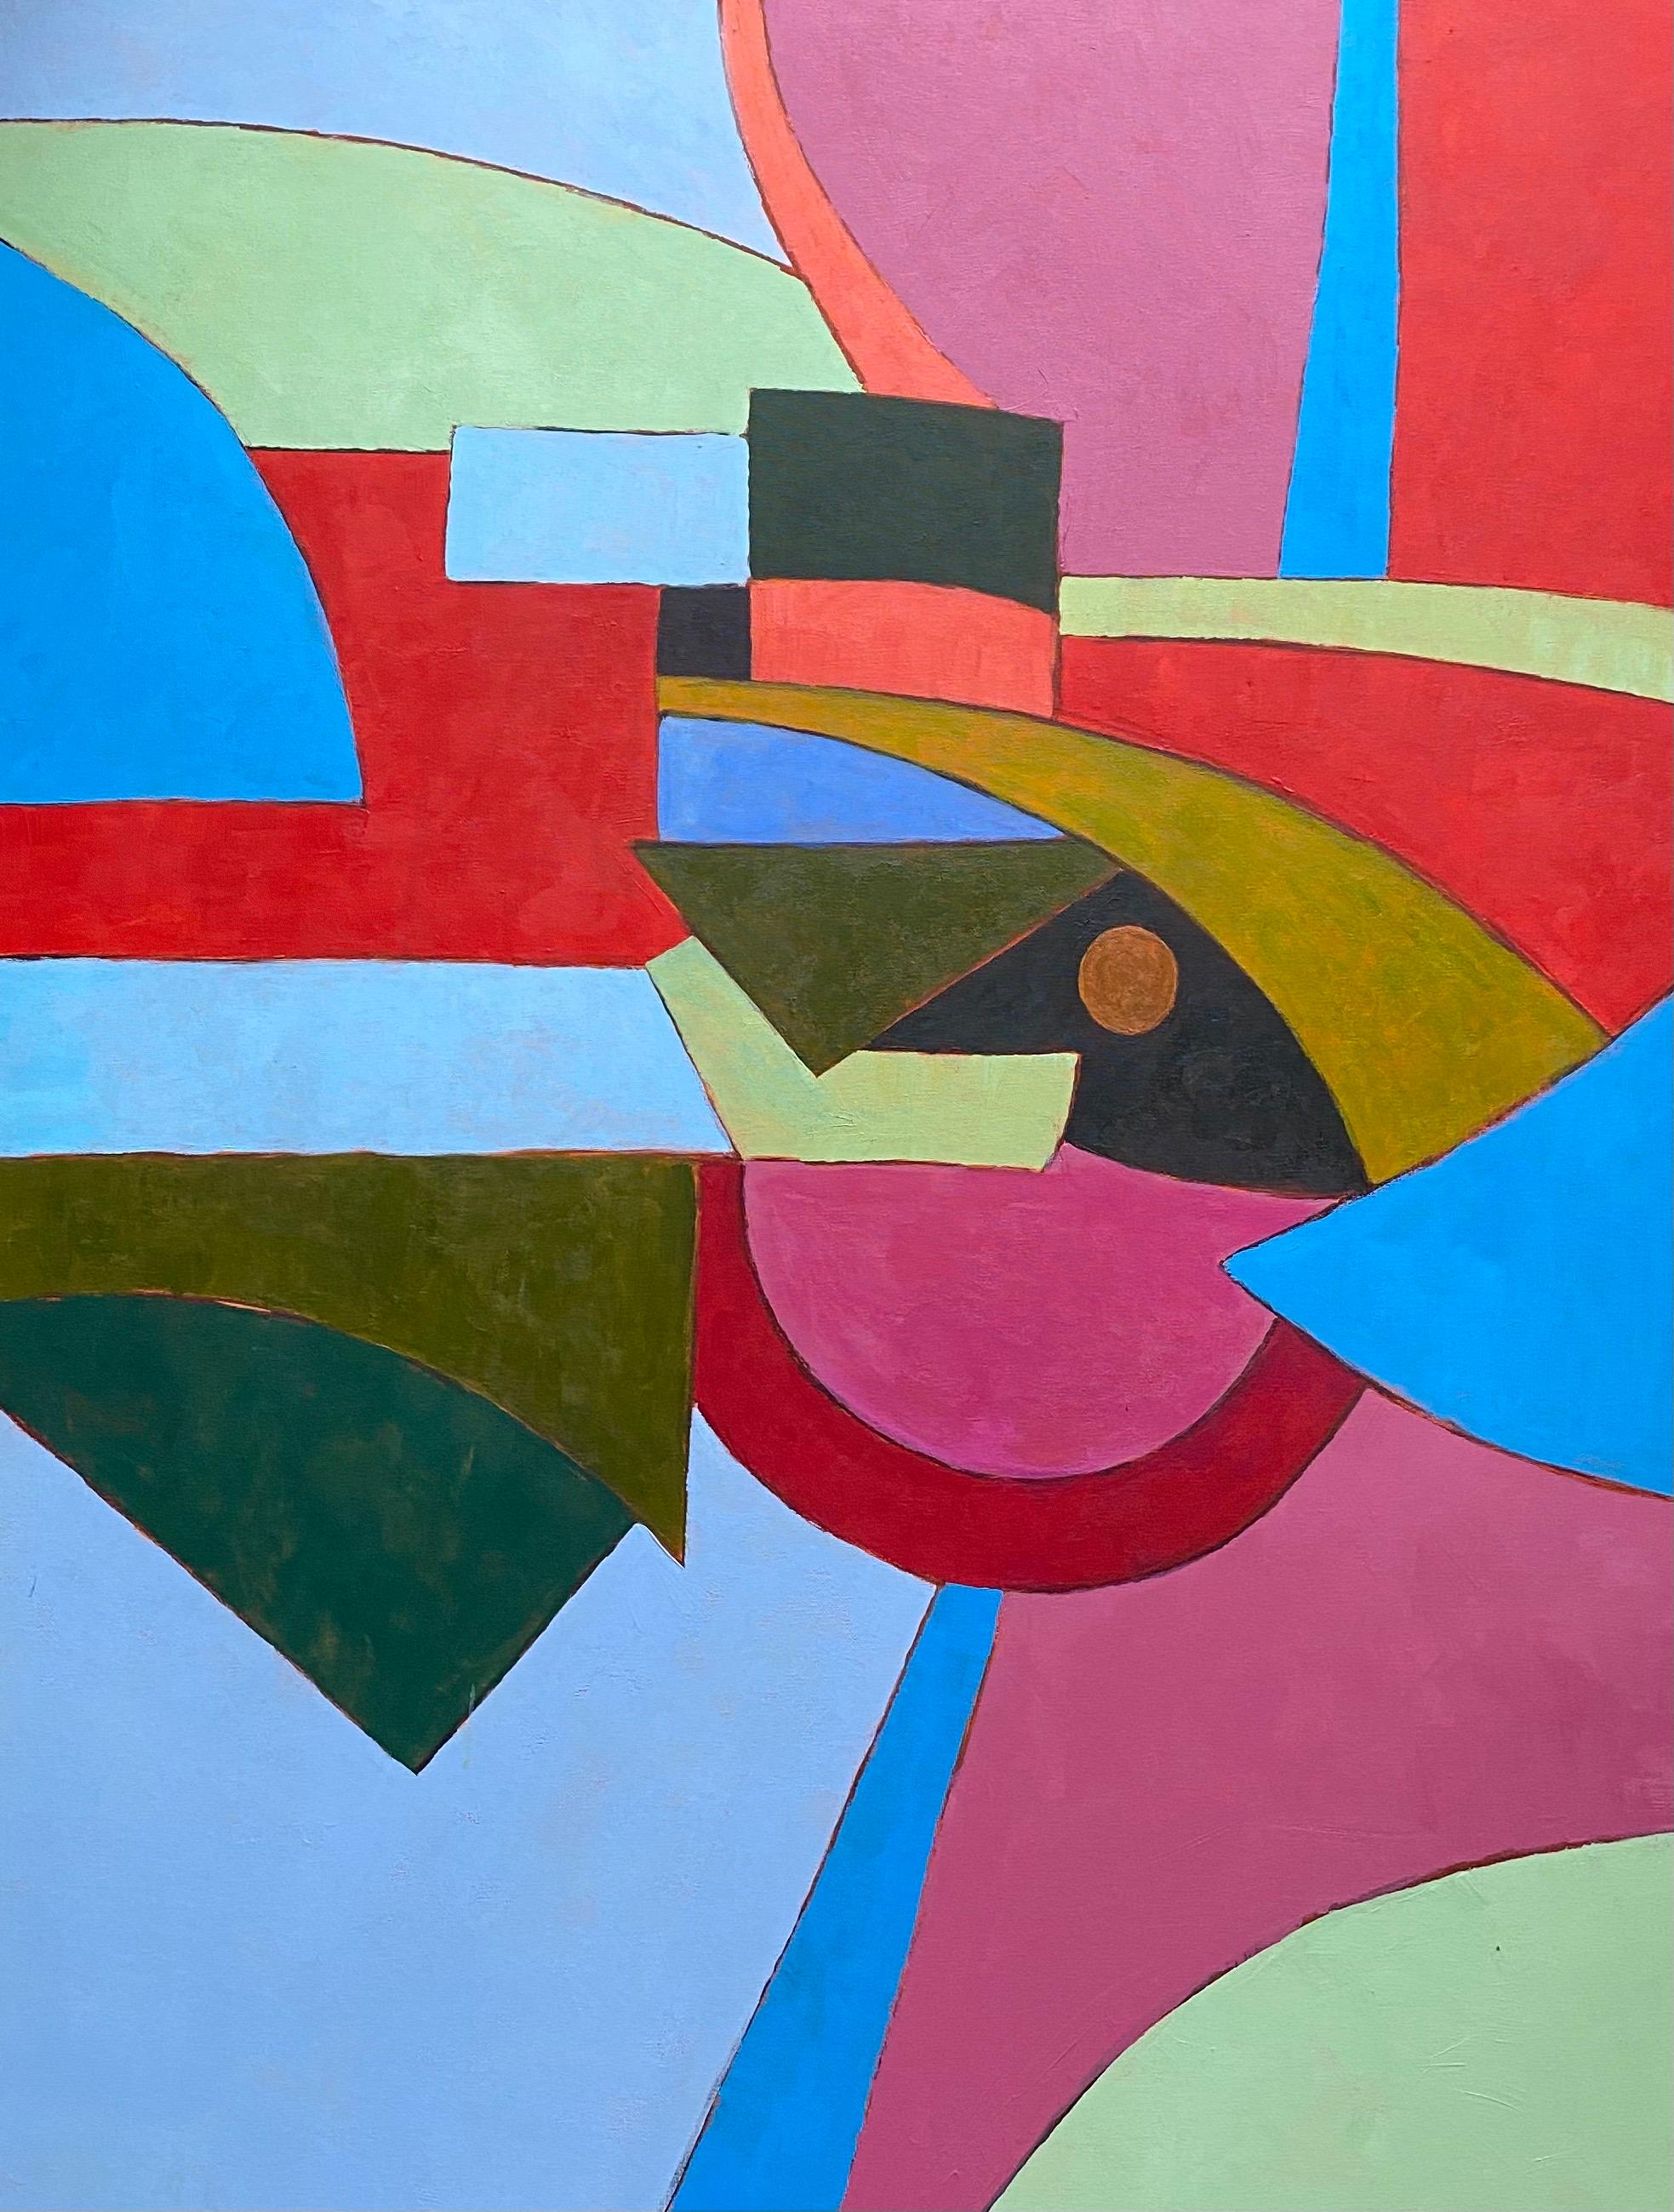 Abstract Painting Michael Haswell - Peinture abstraite géométrique d'un artiste britannique répertorié - Mix of Bright Colors